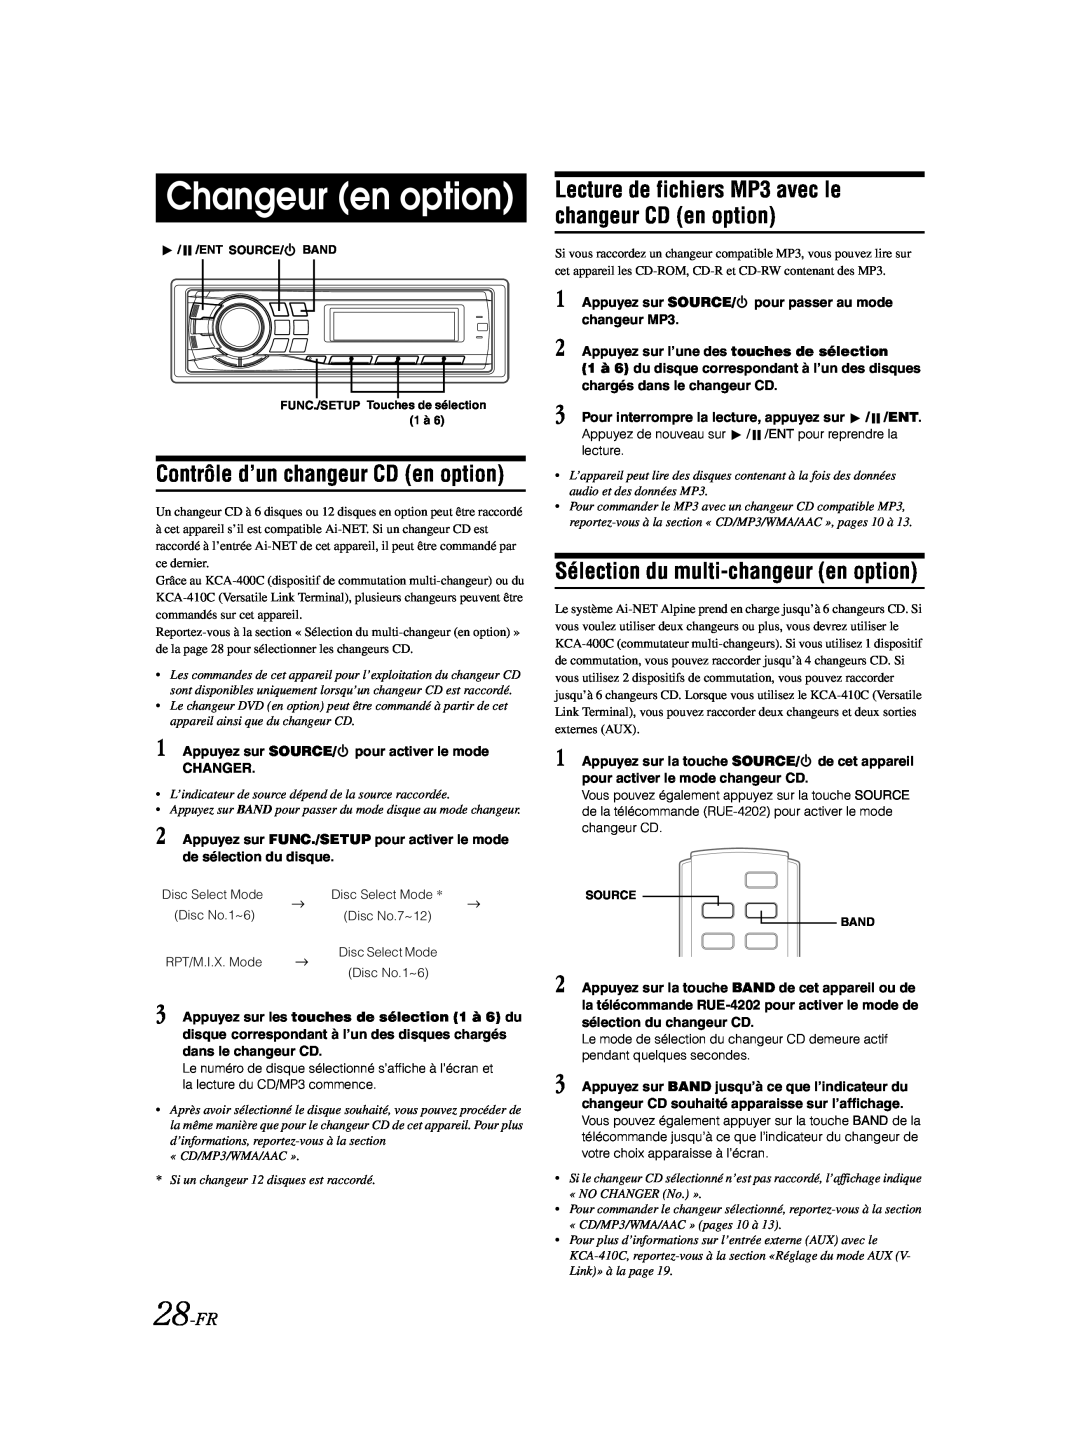 Alpine CDA-9885 Changeur en option, Contrôle d’un changeur CD en option, Sélection du multi-changeuren option, 28-FR 